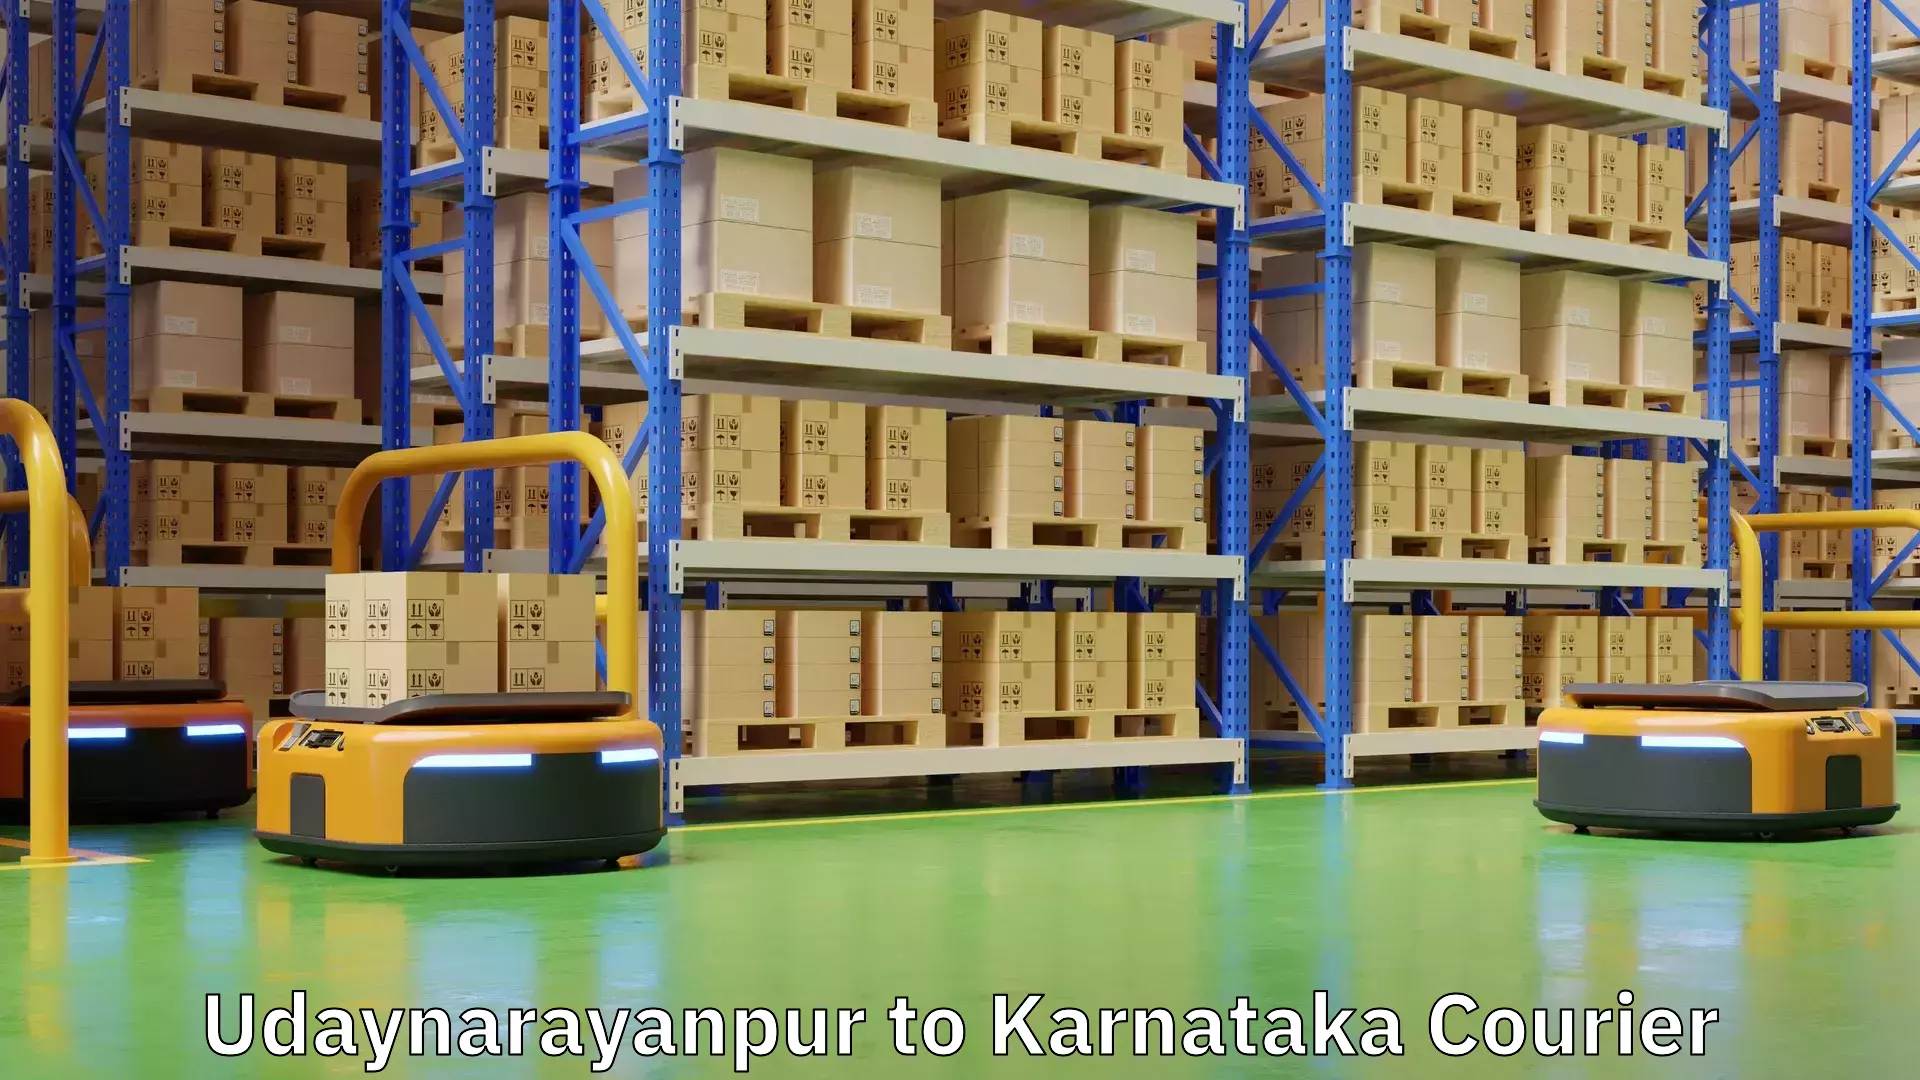 Online shipping calculator Udaynarayanpur to Karnataka